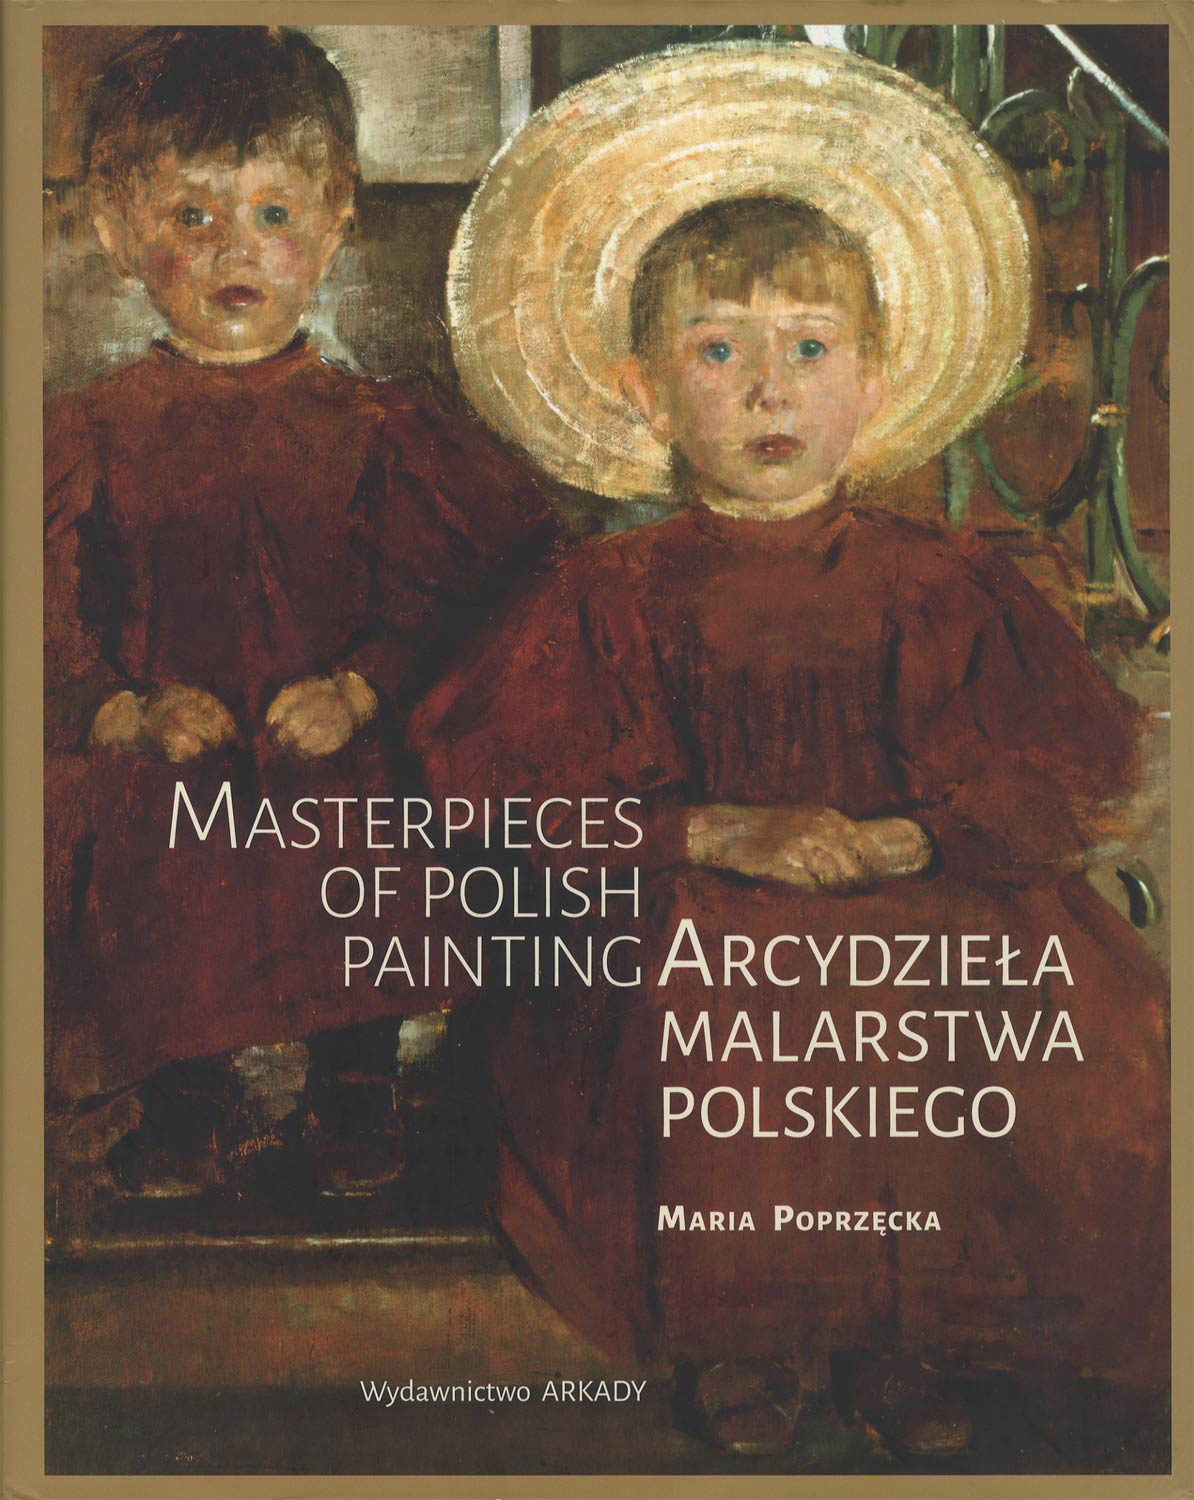 Arcydzieła malarstwa polskiego　Masterpieces of Polish Painting［image1］